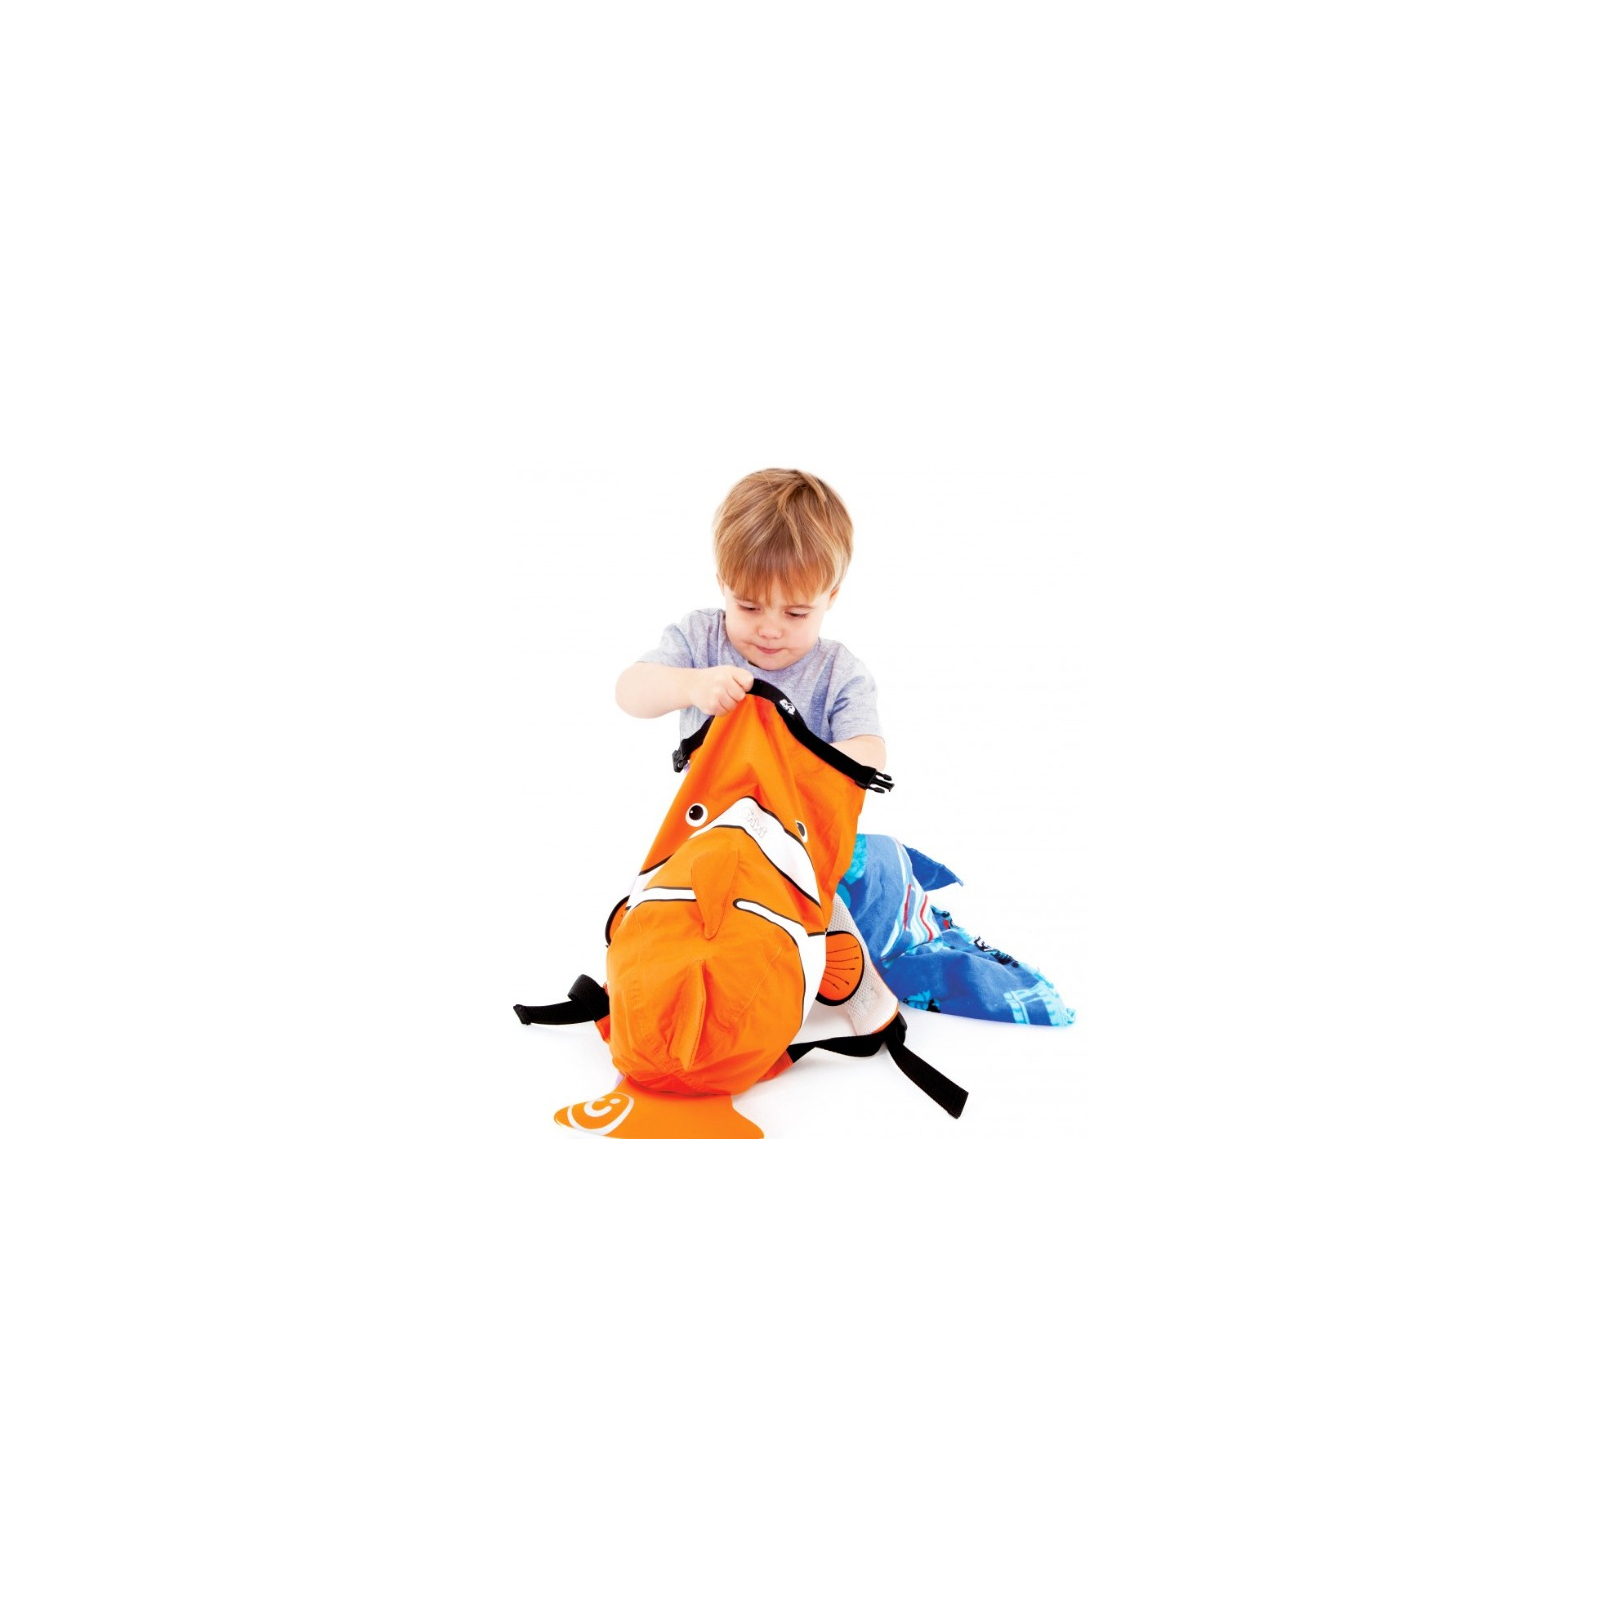 Рюкзак детский Trunki PaddlePak Рыбка Оранжевый (0112-GB01-NP) изображение 4